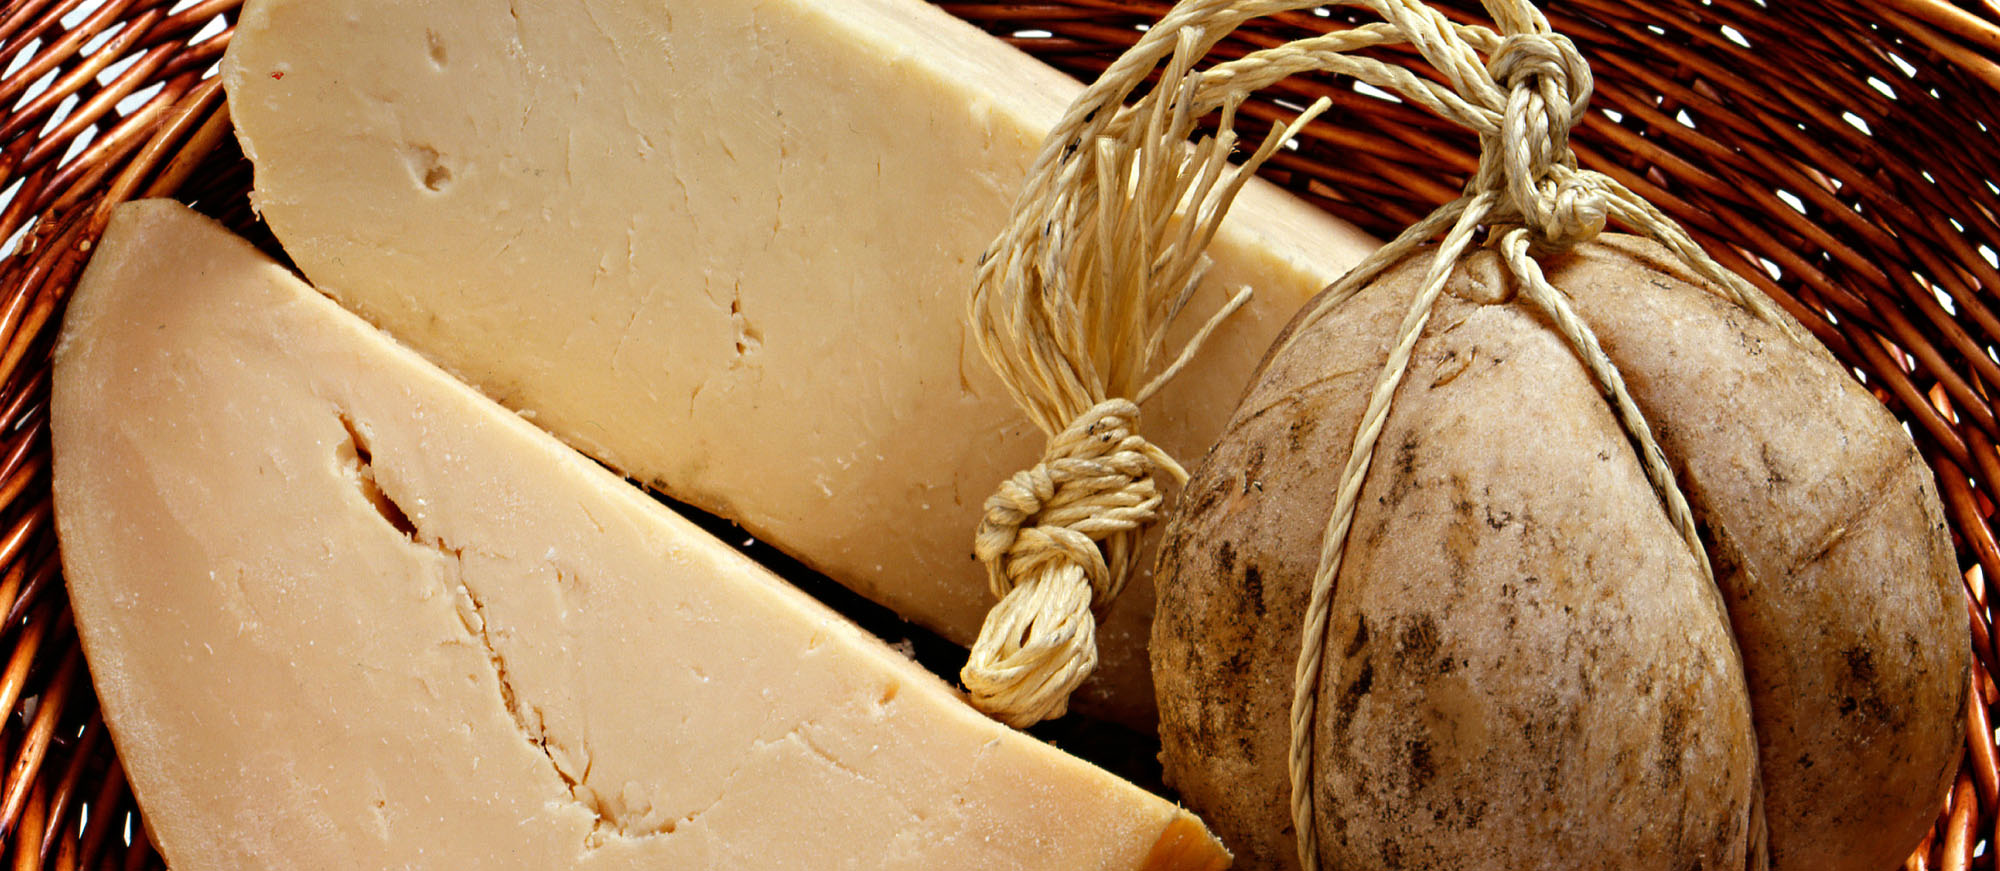 47 Best Natural Rind Cheeses in Italy - TasteAtlas